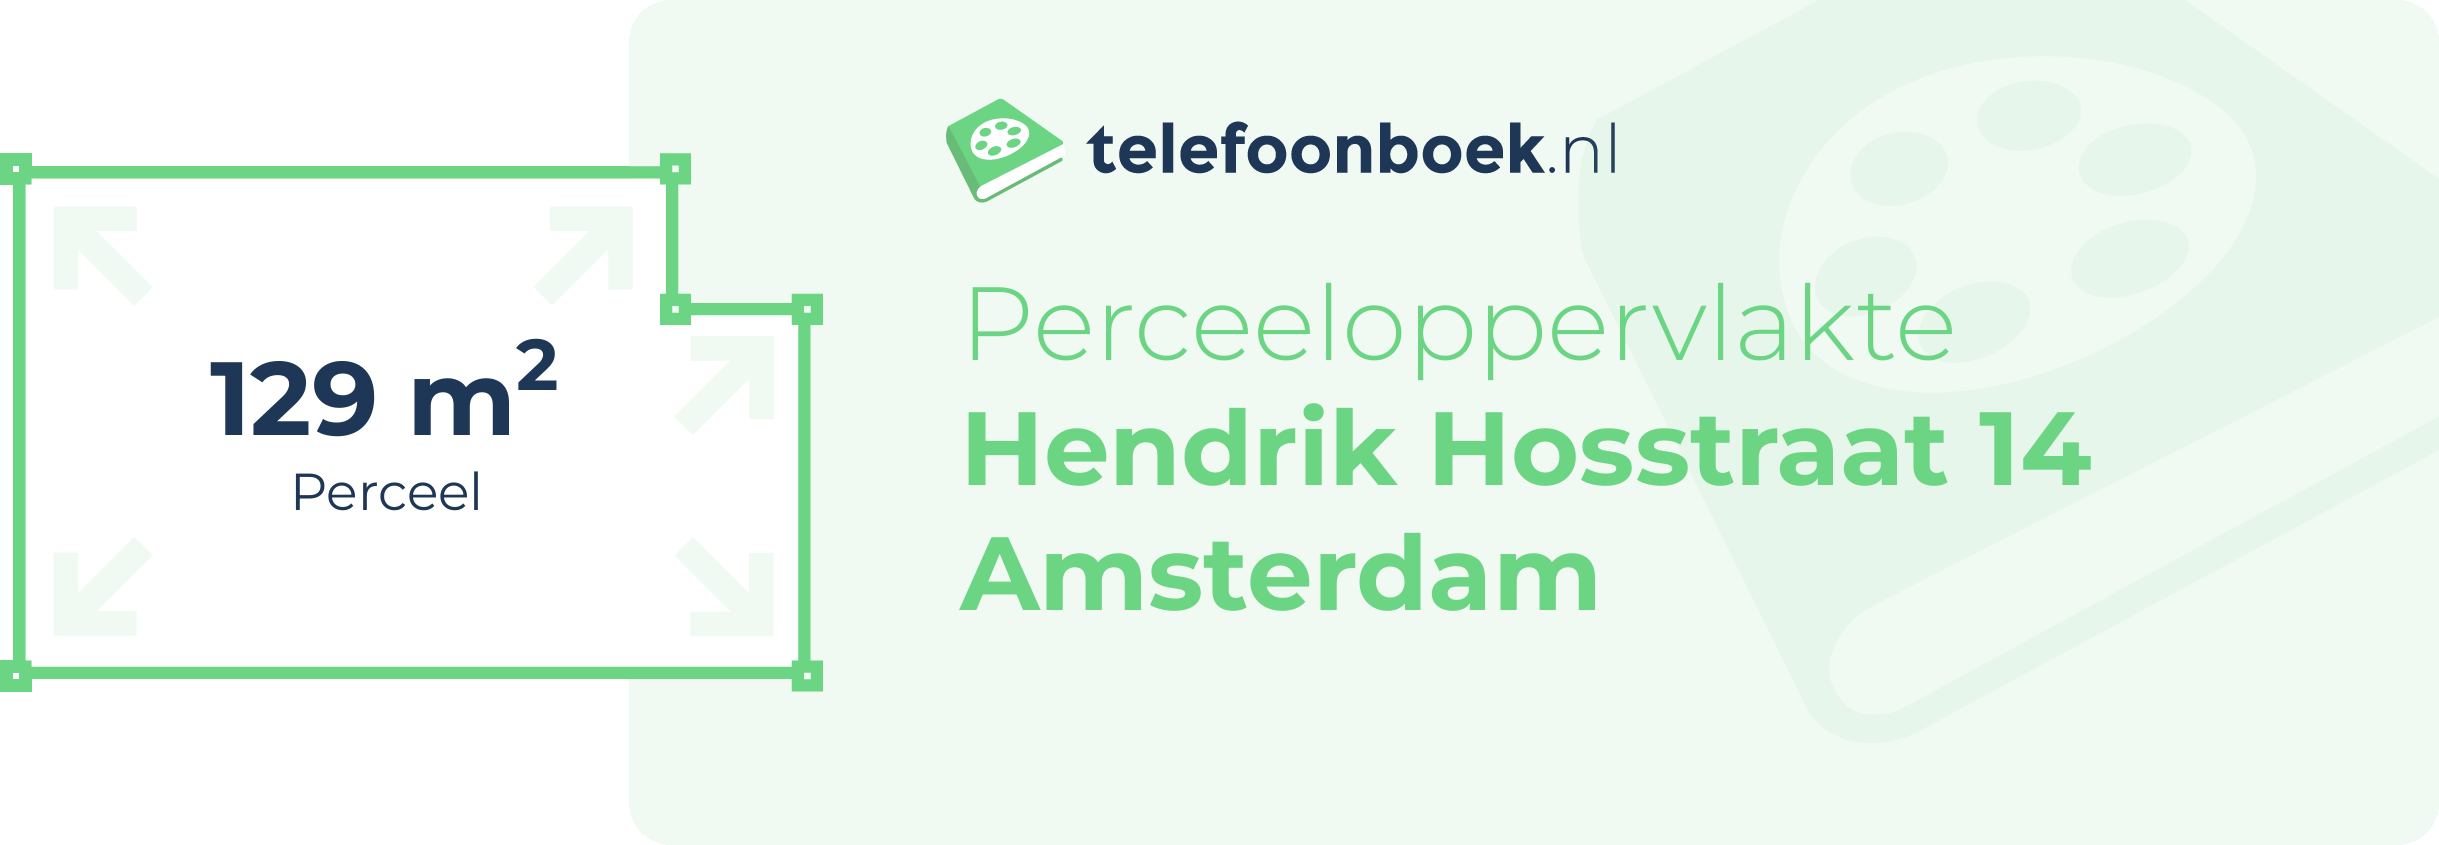 Perceeloppervlakte Hendrik Hosstraat 14 Amsterdam